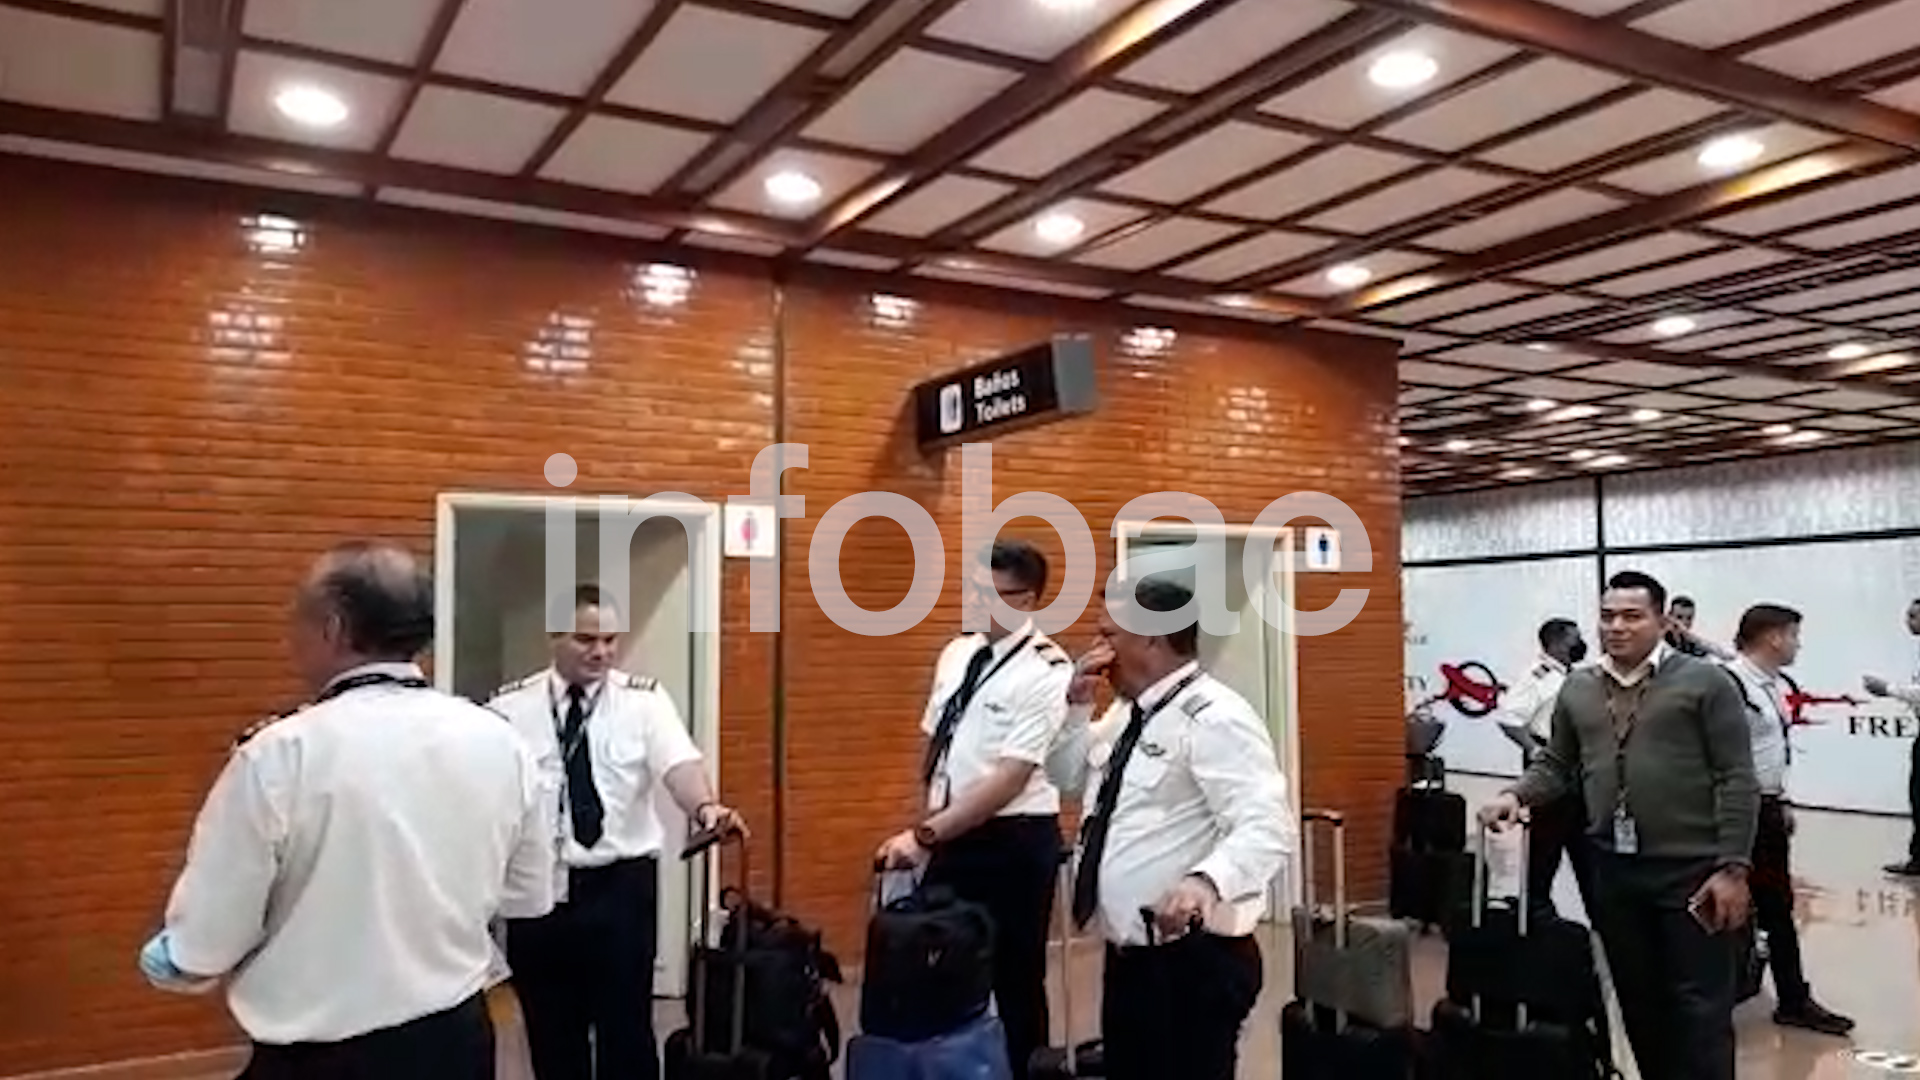 The Emtrasur crew at Ciudad del Este Airport